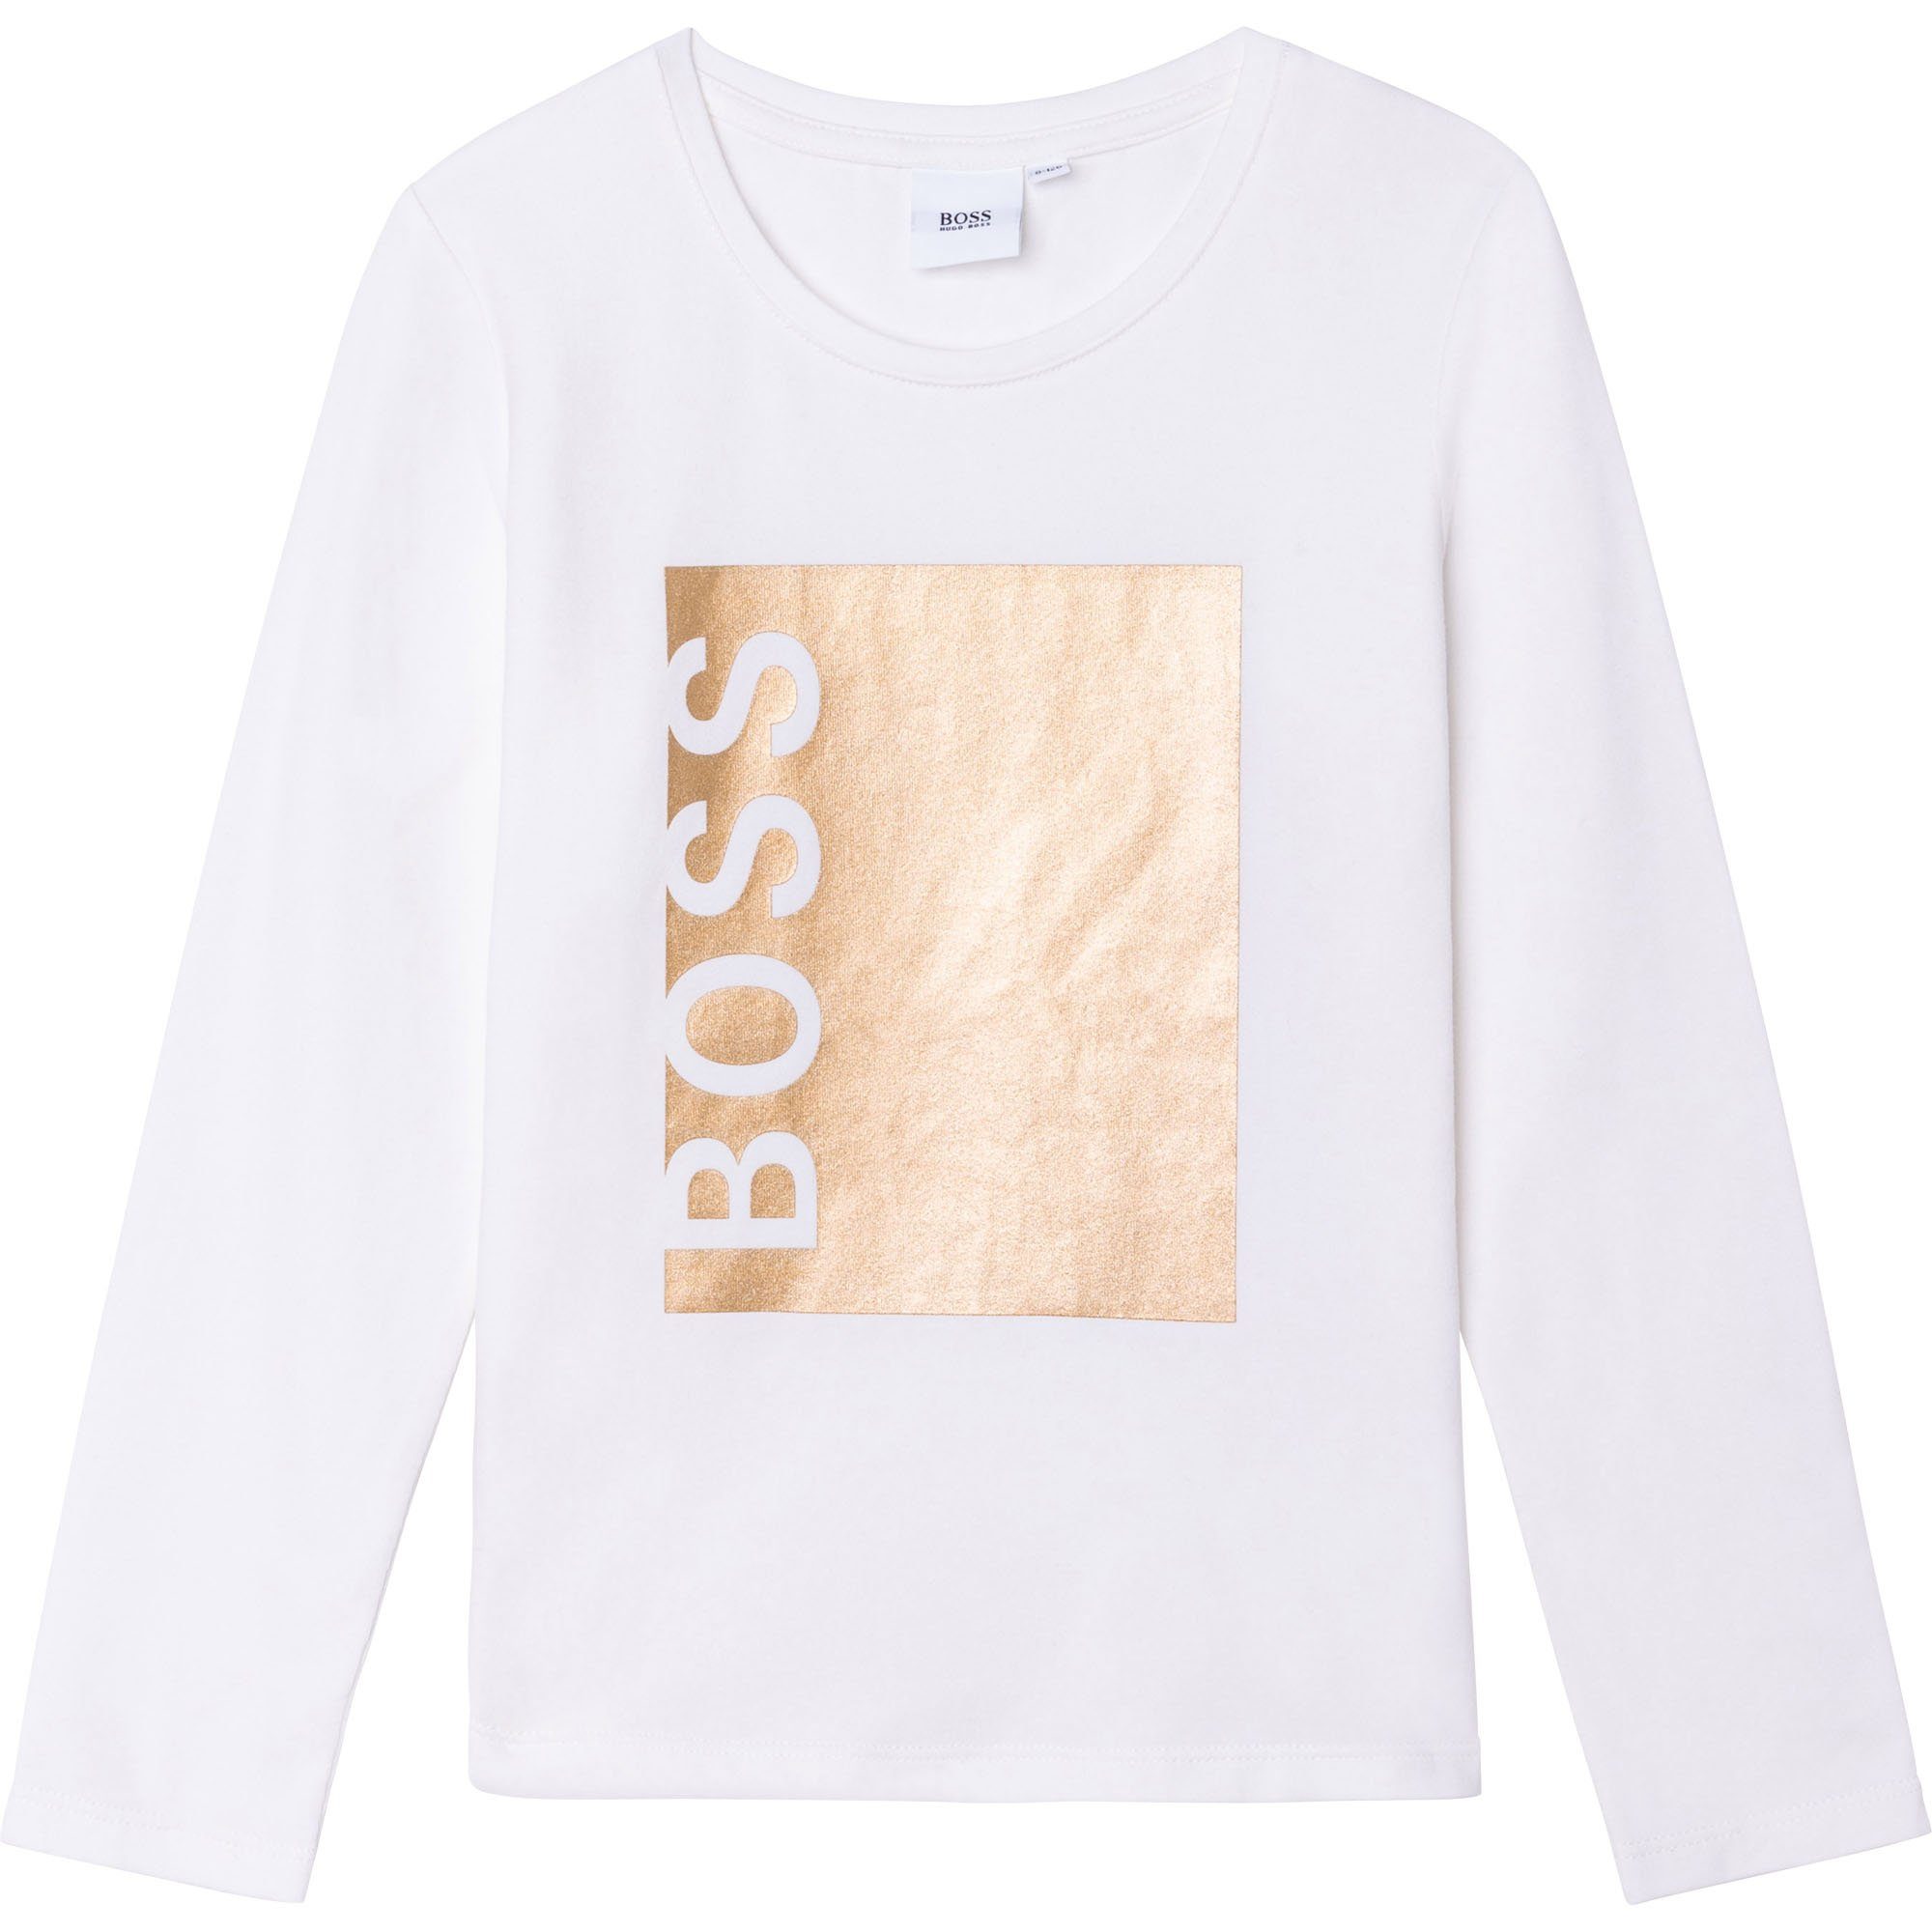 BOSS Langarmshirt Hugo Boss Mädchen Langarmshirt creme gold mit Logo